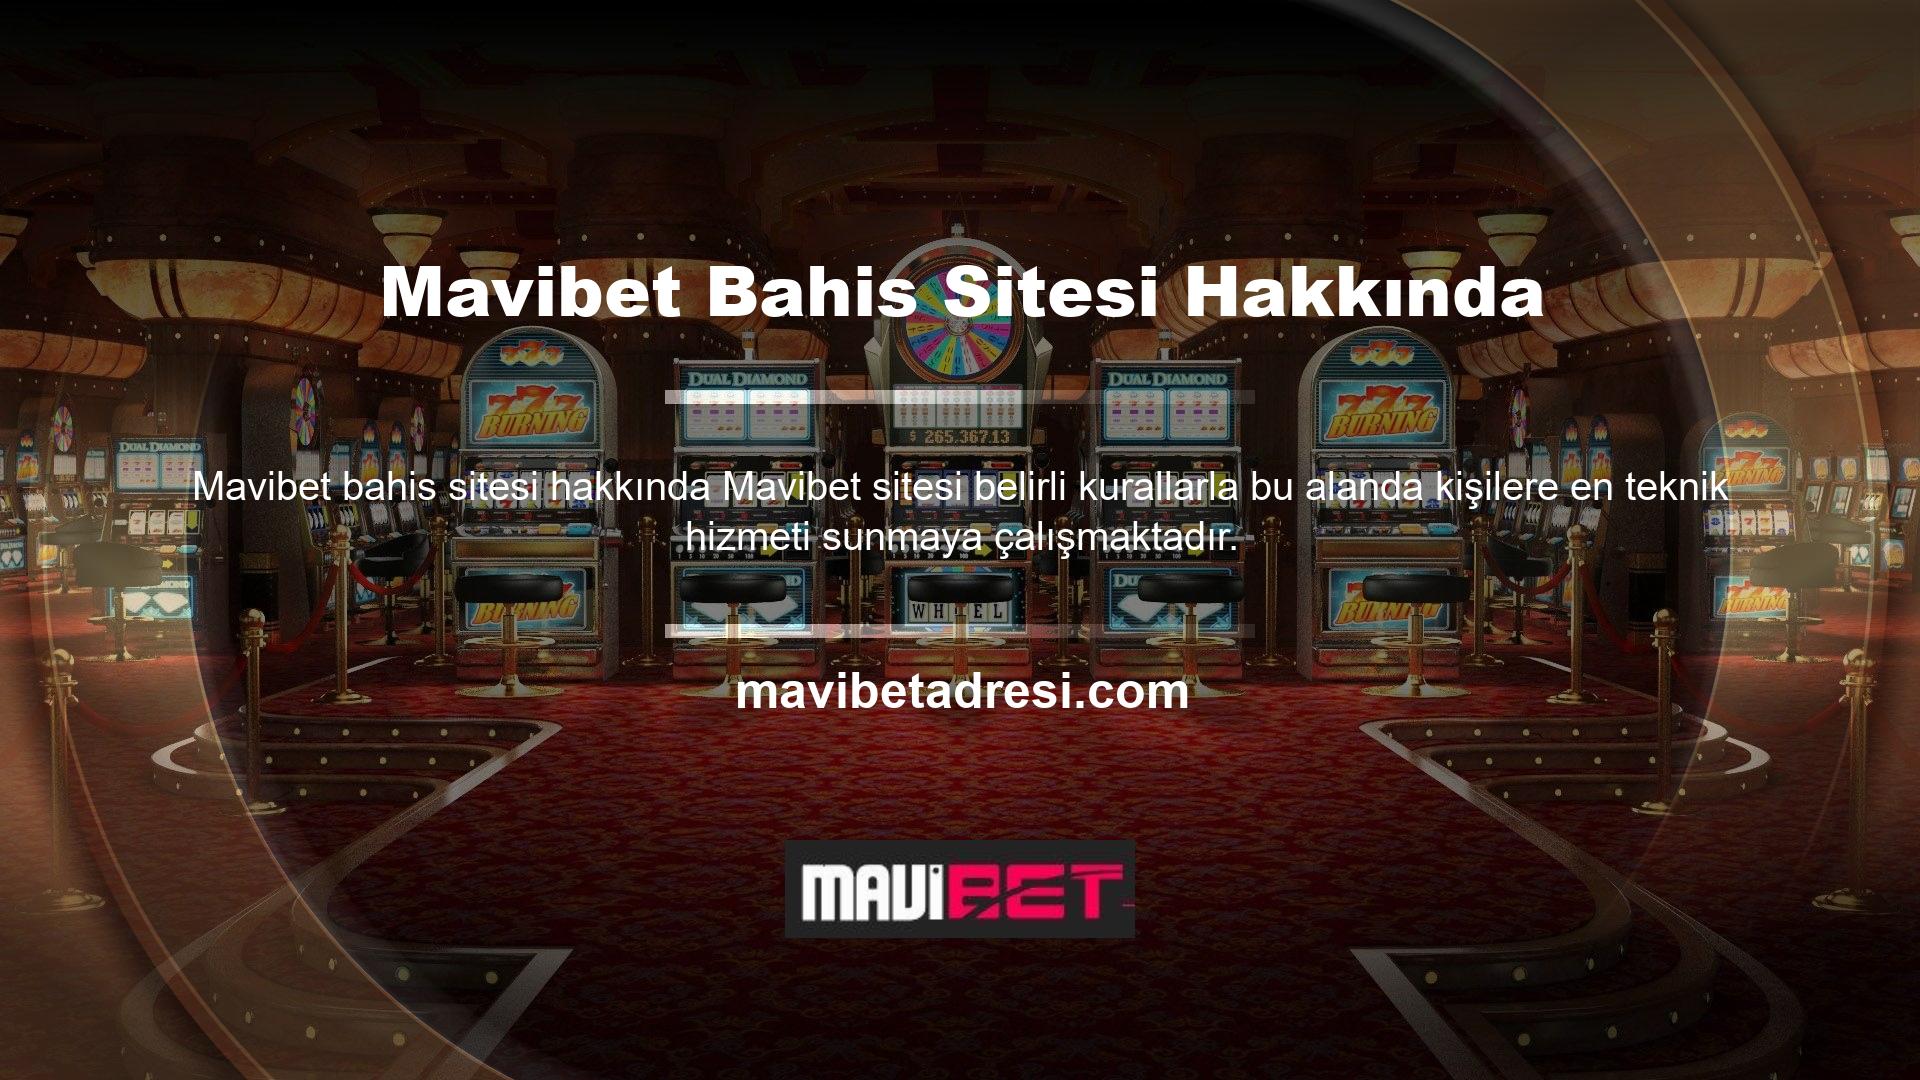 Casinoların çeşitliliği nedeniyle Mavibet şikayetleriyle ilgili konular zaman zaman bu forumlarda yayınlanmaktadır